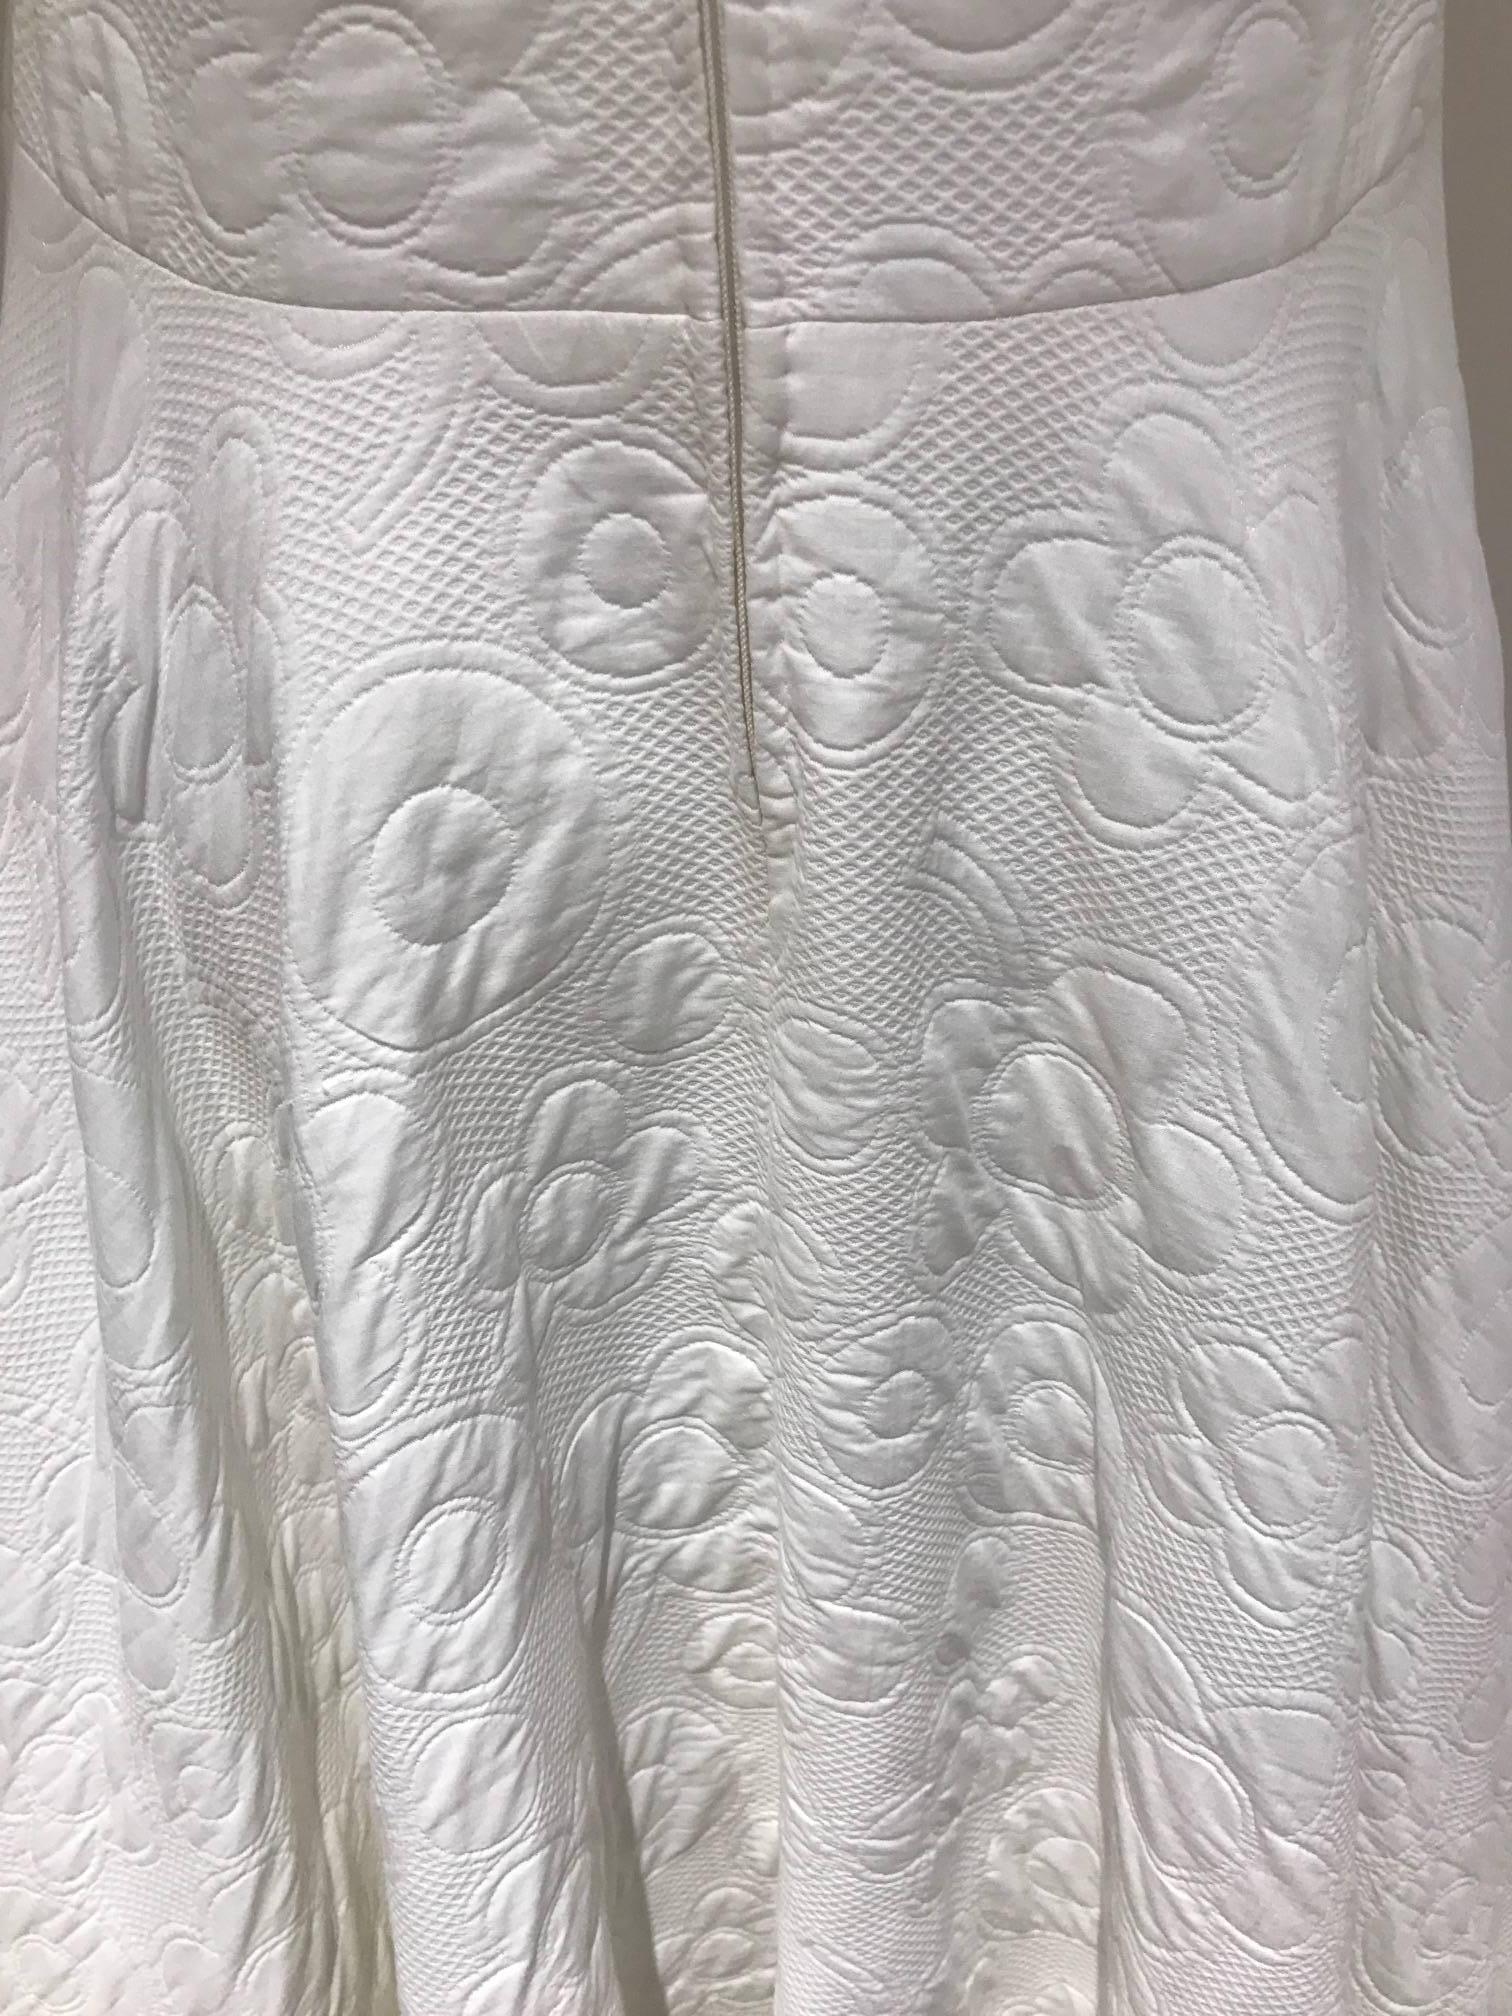 Women's 1970s Geoffrey Beene white cotton pique maxi dress